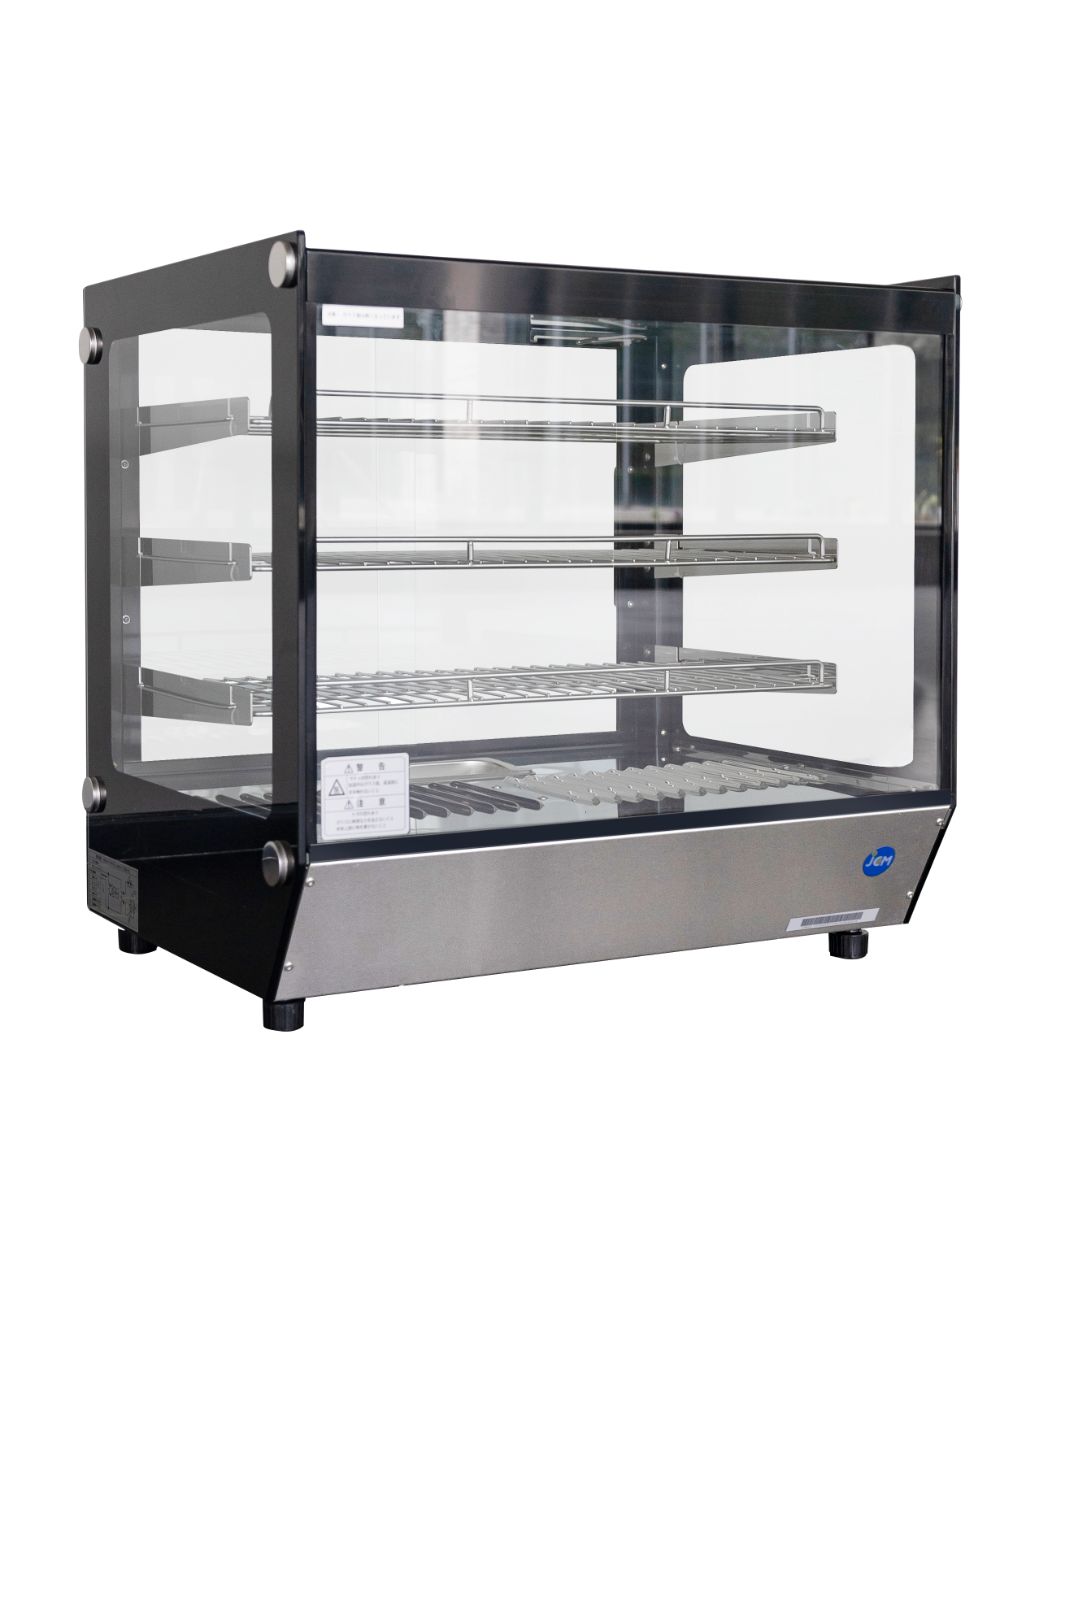 ヨコ型冷蔵ショーケース 冷蔵ショーケース ヨコ型 テーブル型 台下 ショーケース 冷蔵庫 スライド扉 - 6